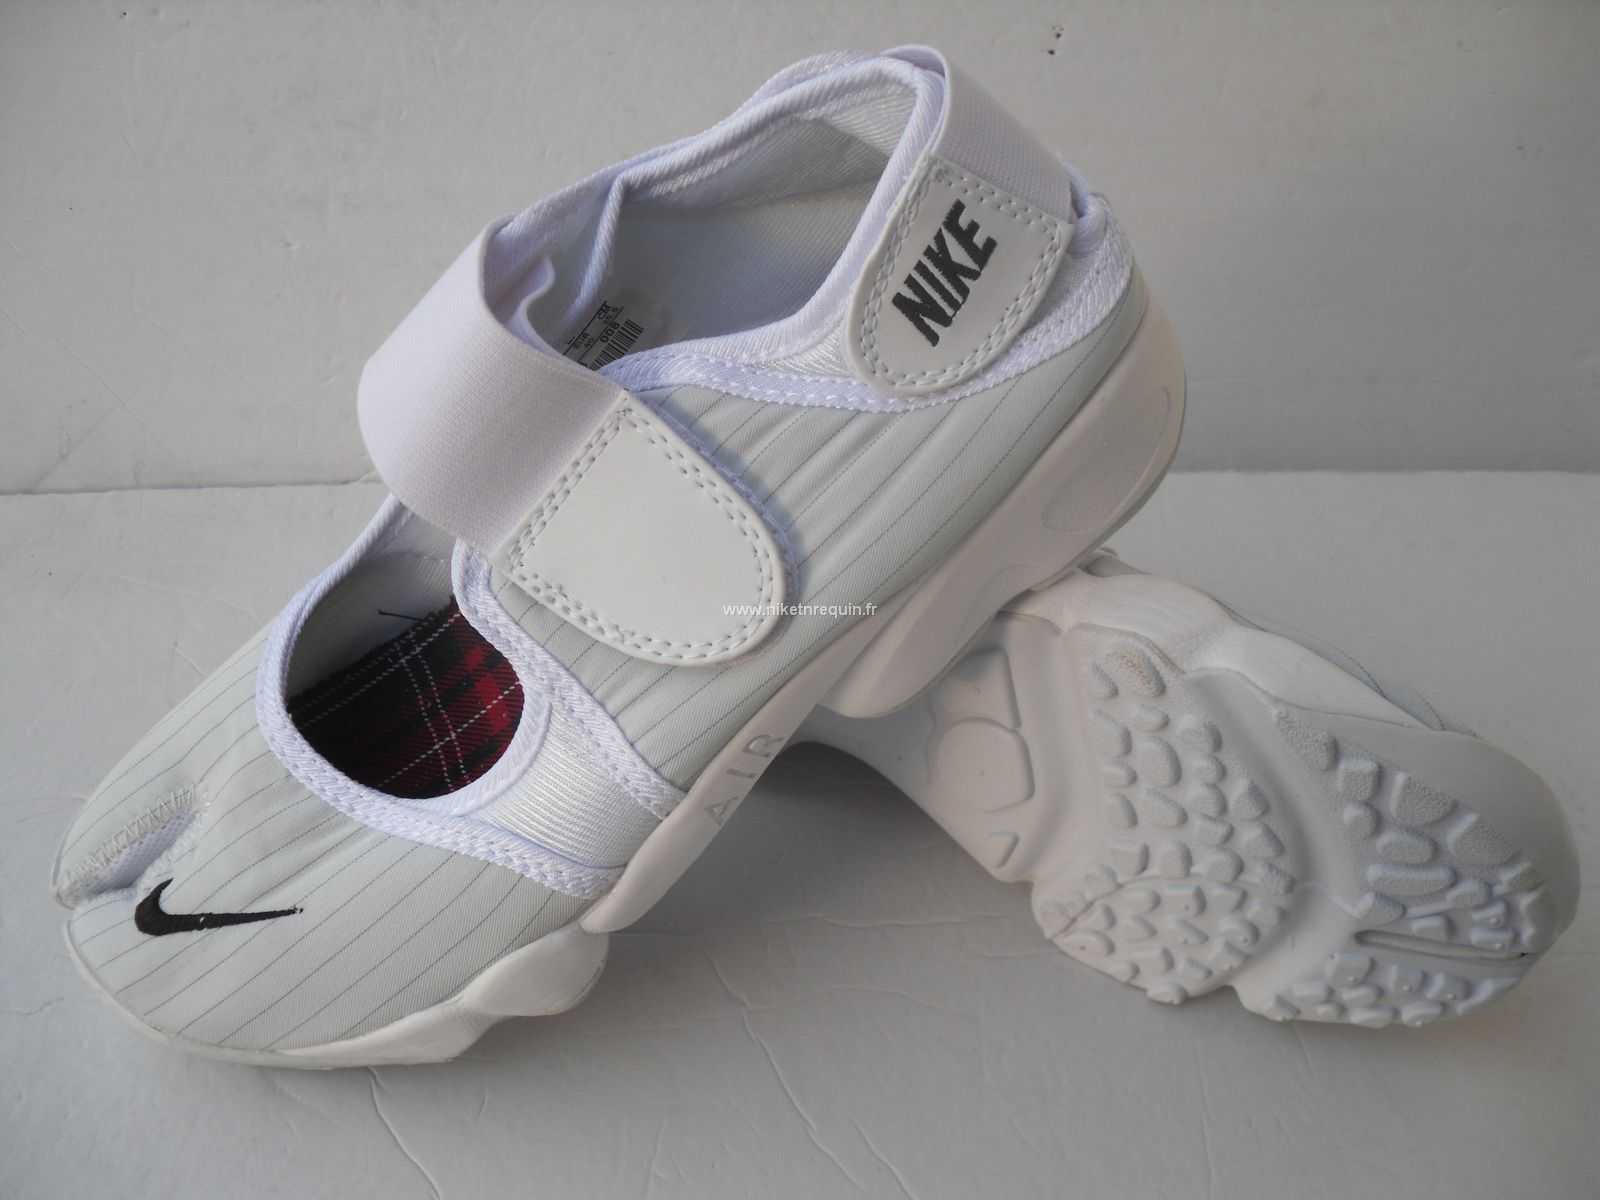 Nouveau Modèle De Chaussures Nike Rift Savoureuse Shox Blanche